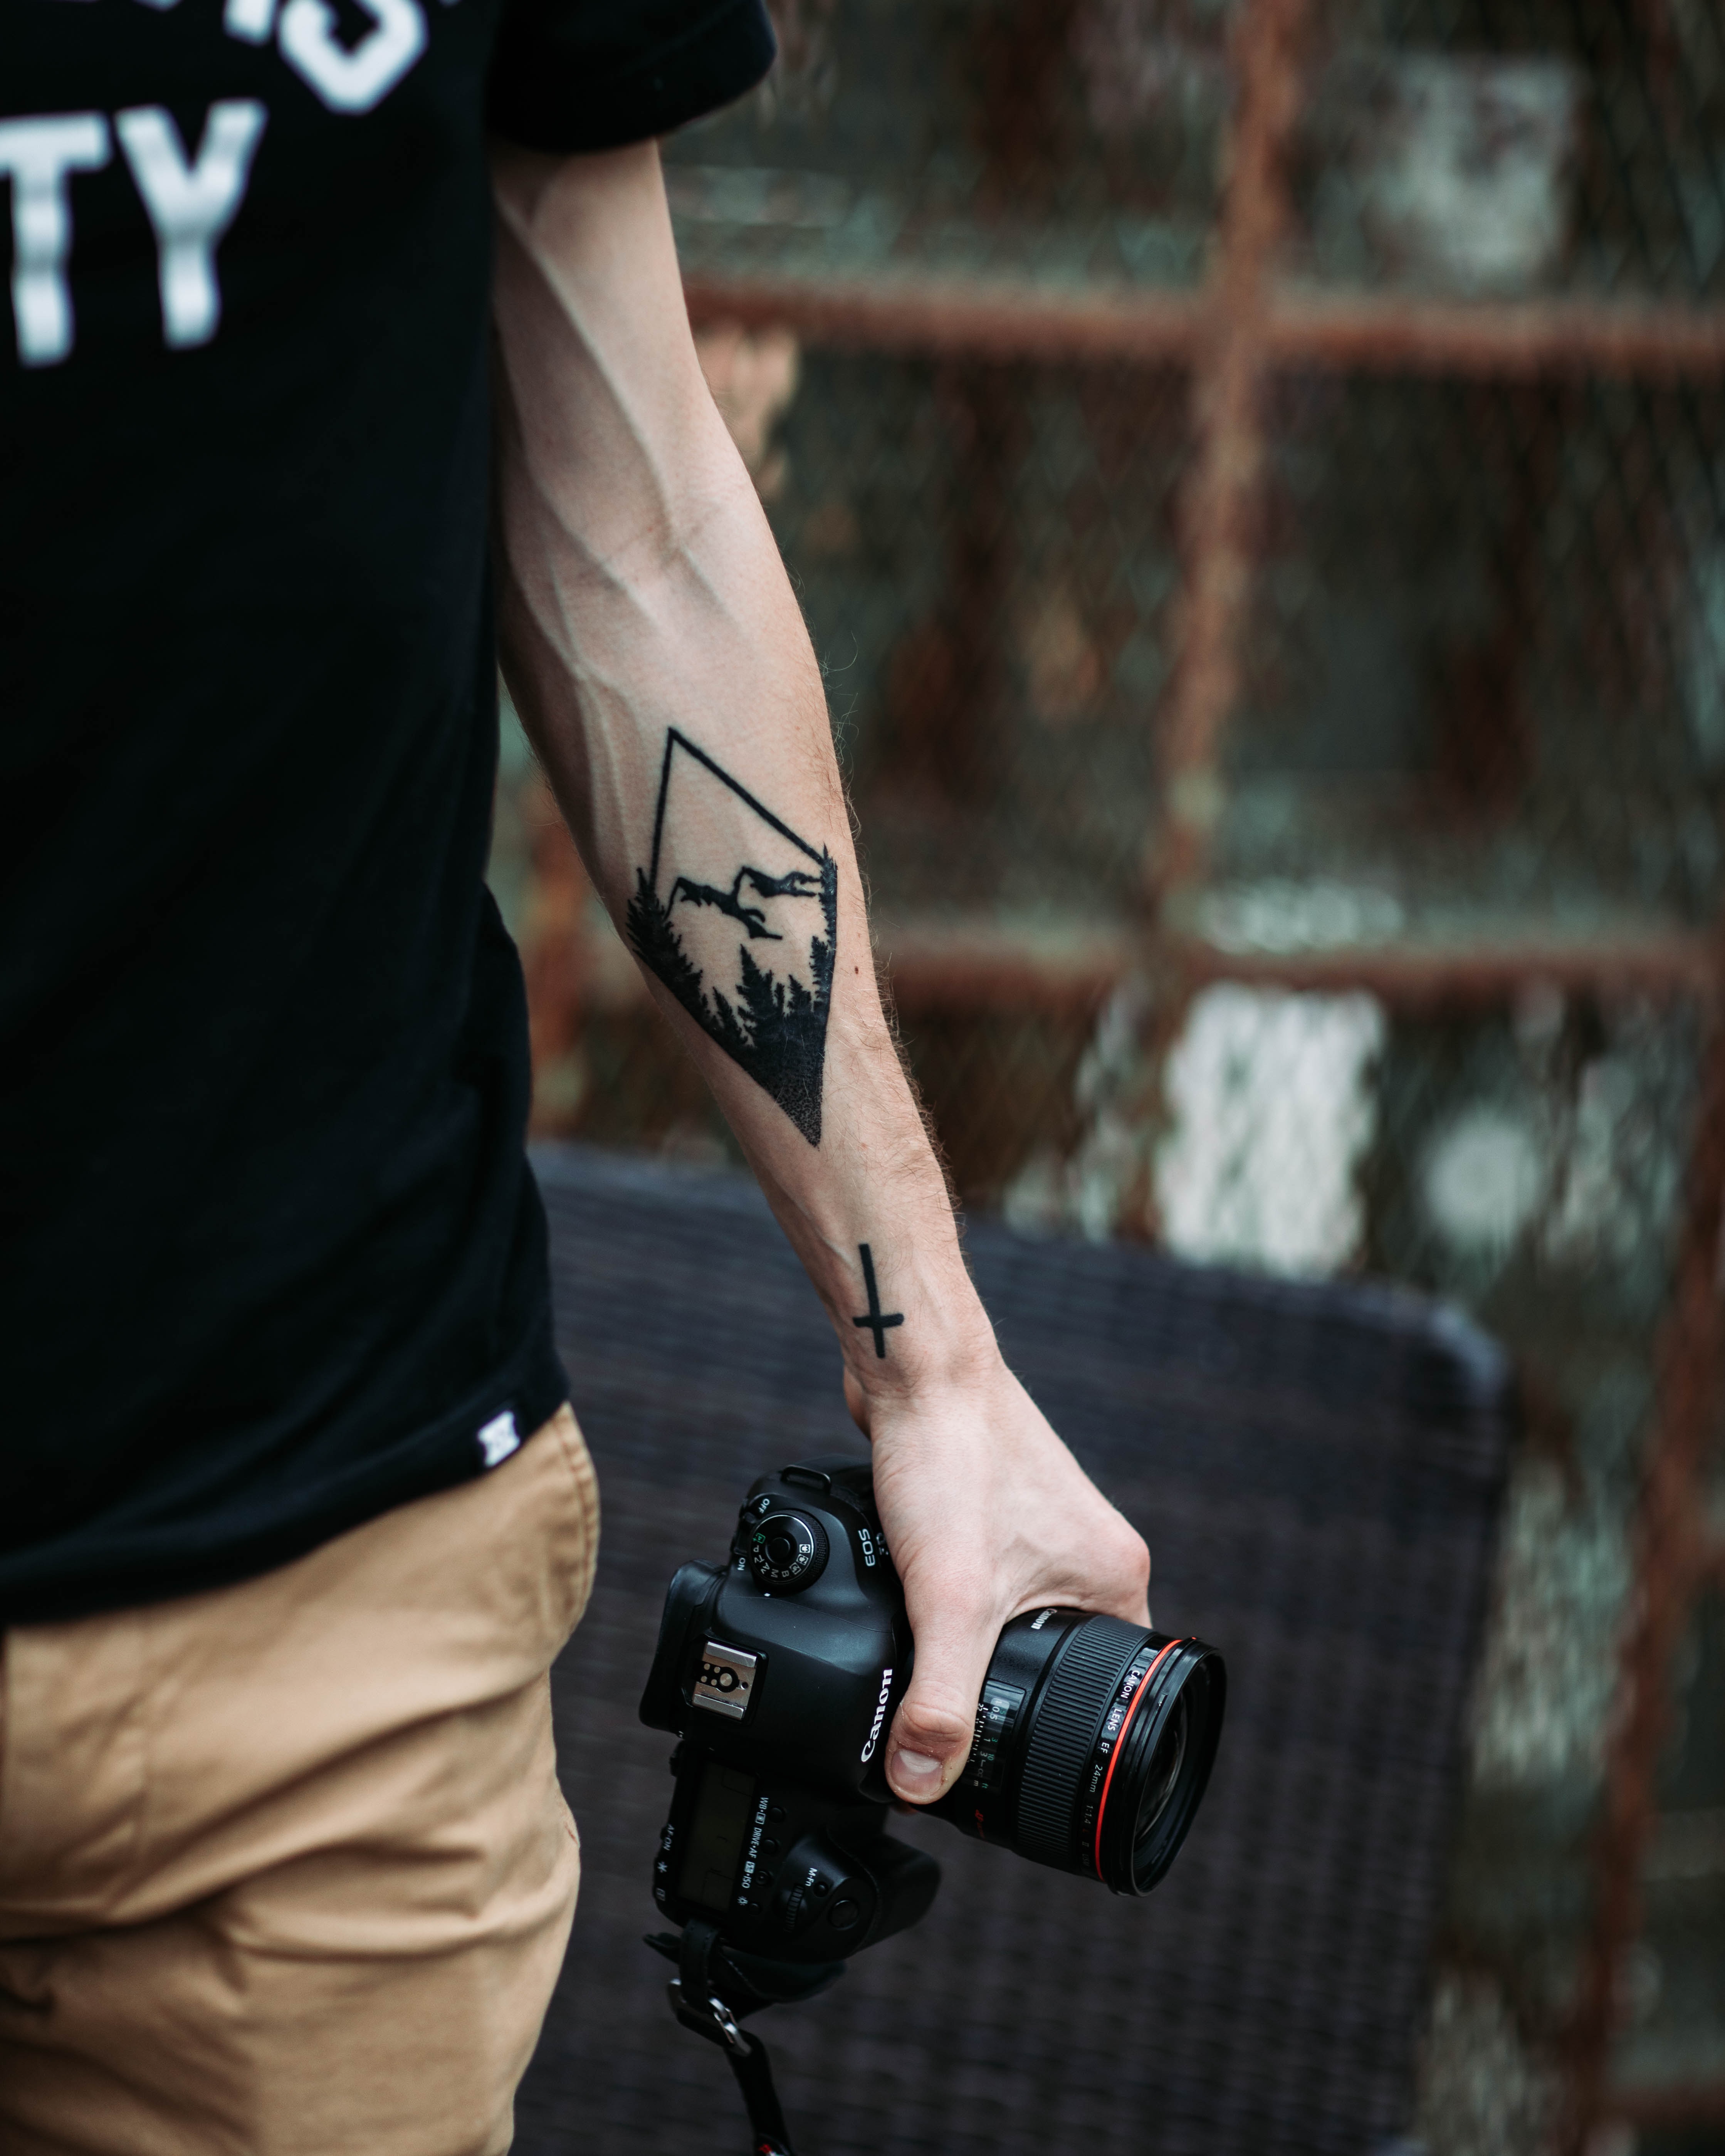 tattoo, photographer, technologies, tattoos, hand, technology, camera cellphone